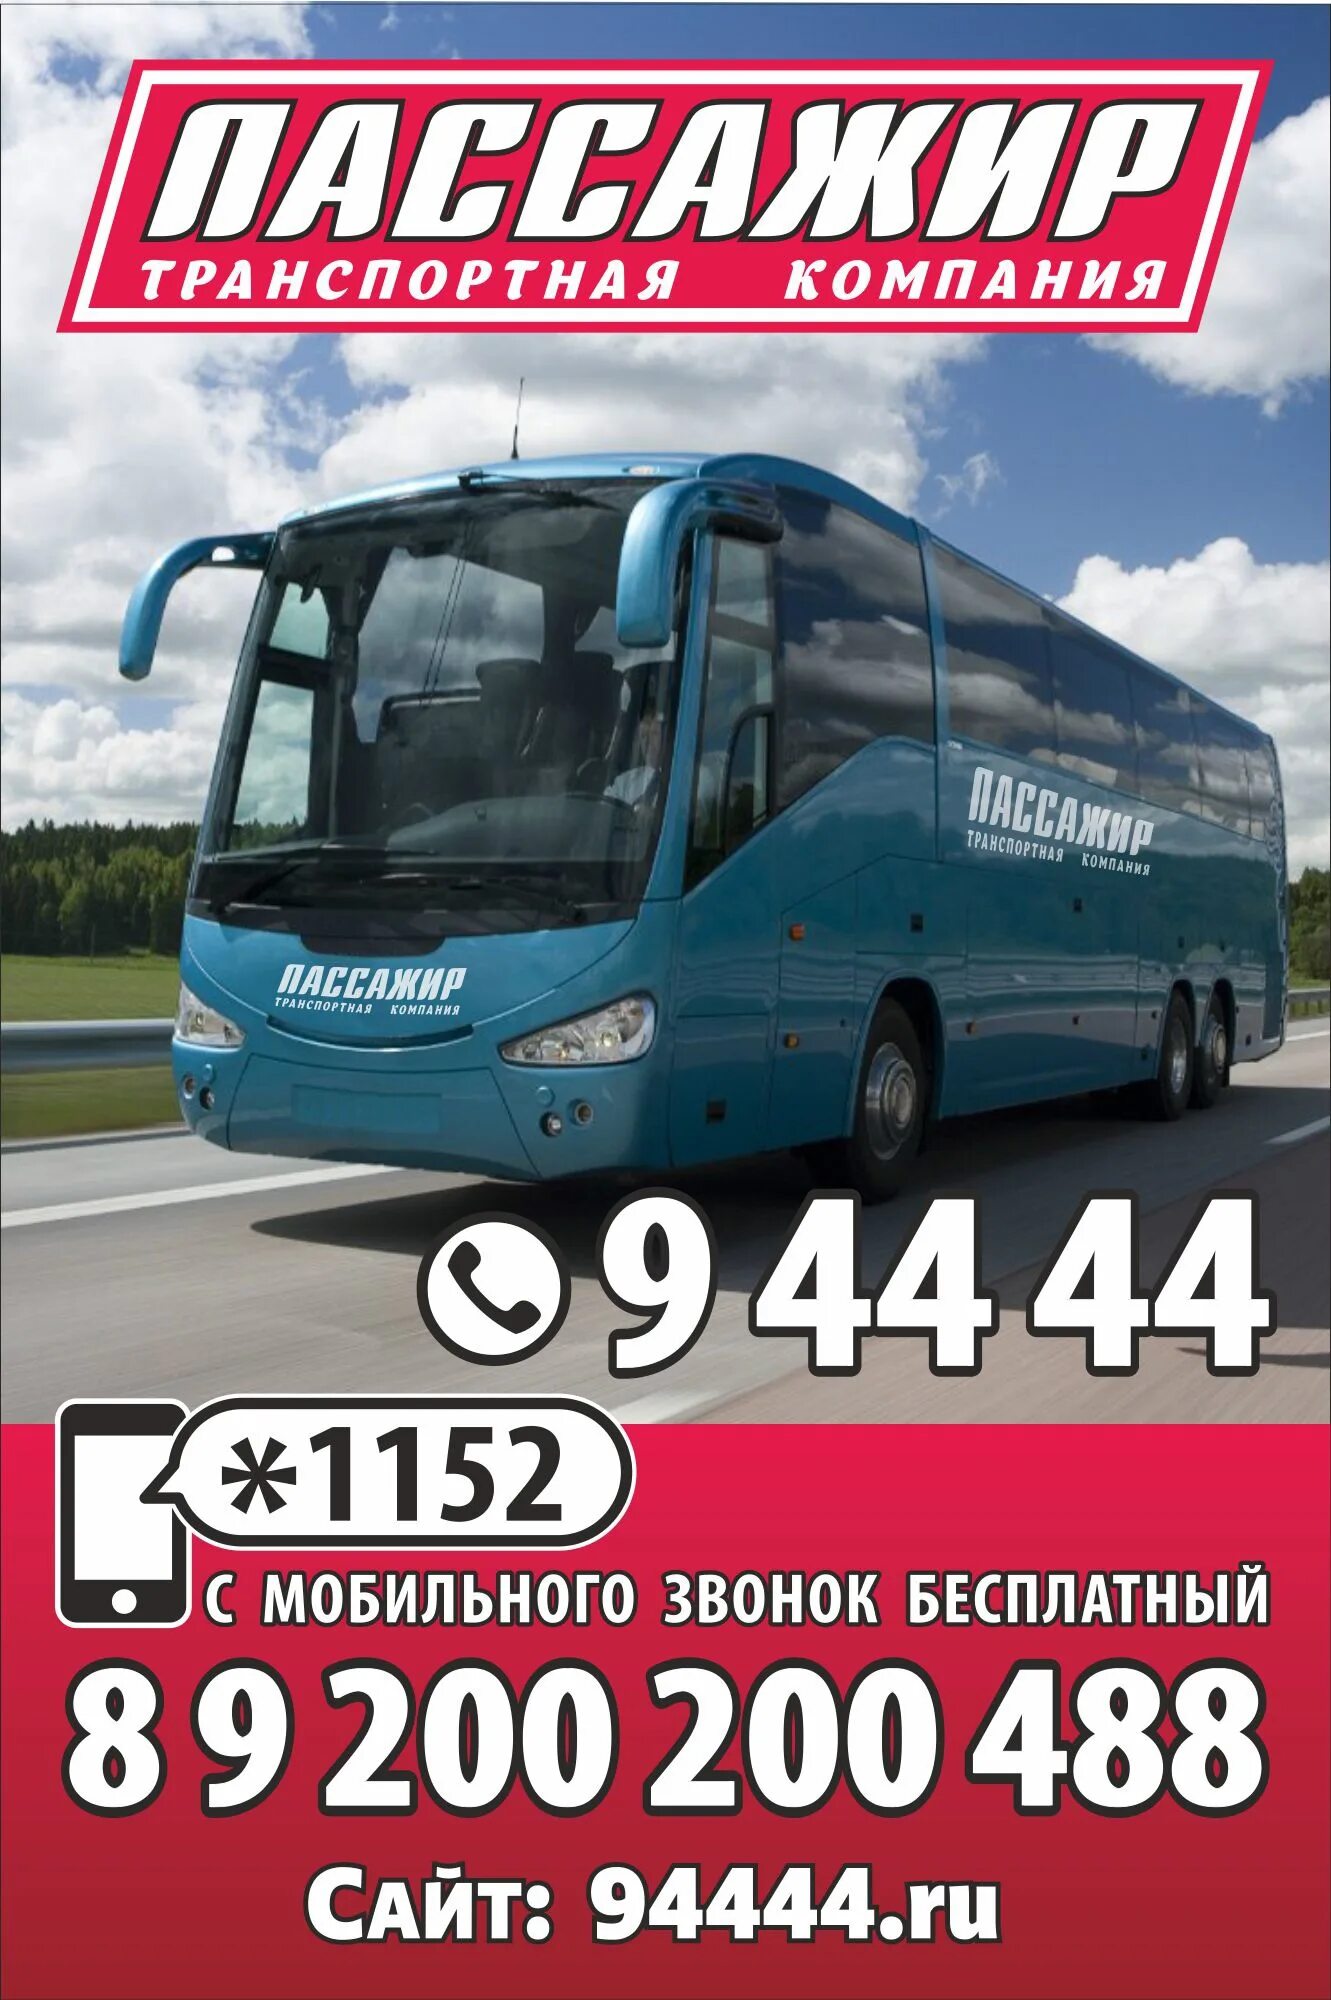 Нижний новгород саров расписание автобусов